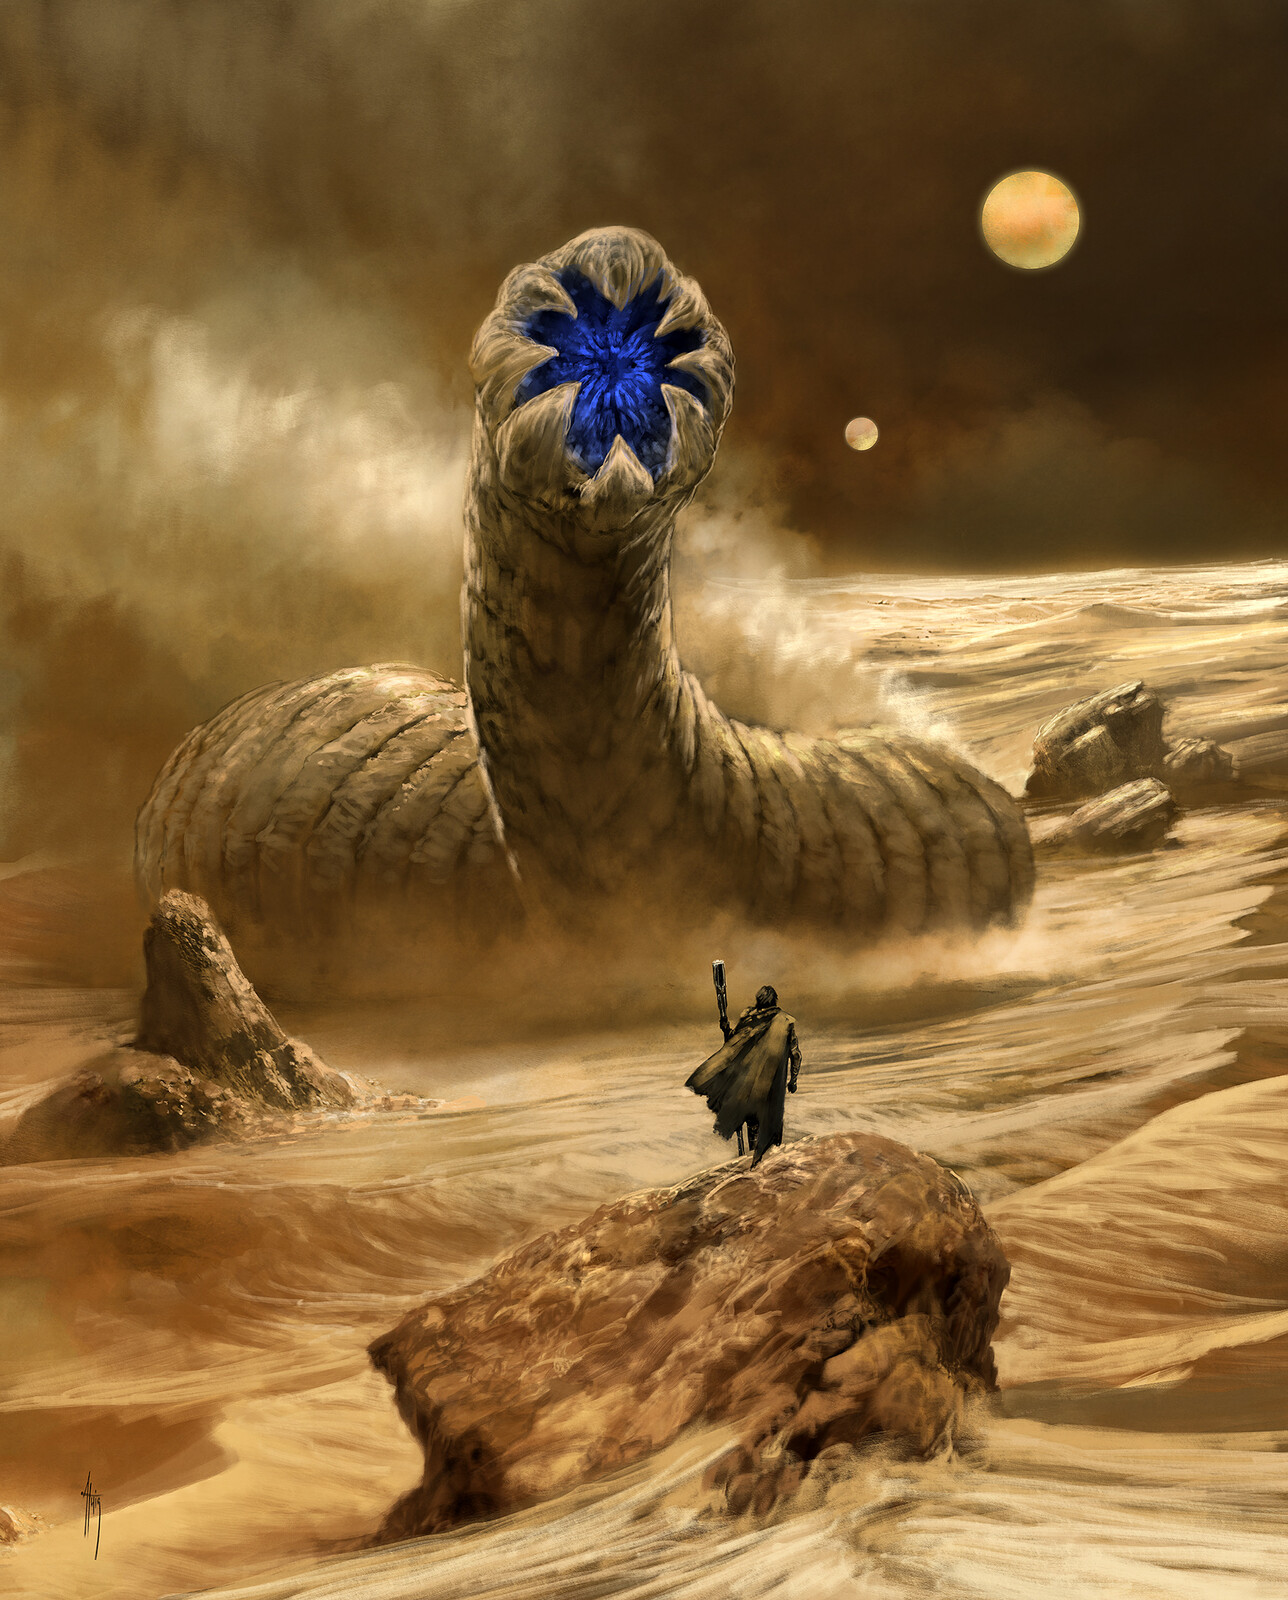 Dune III